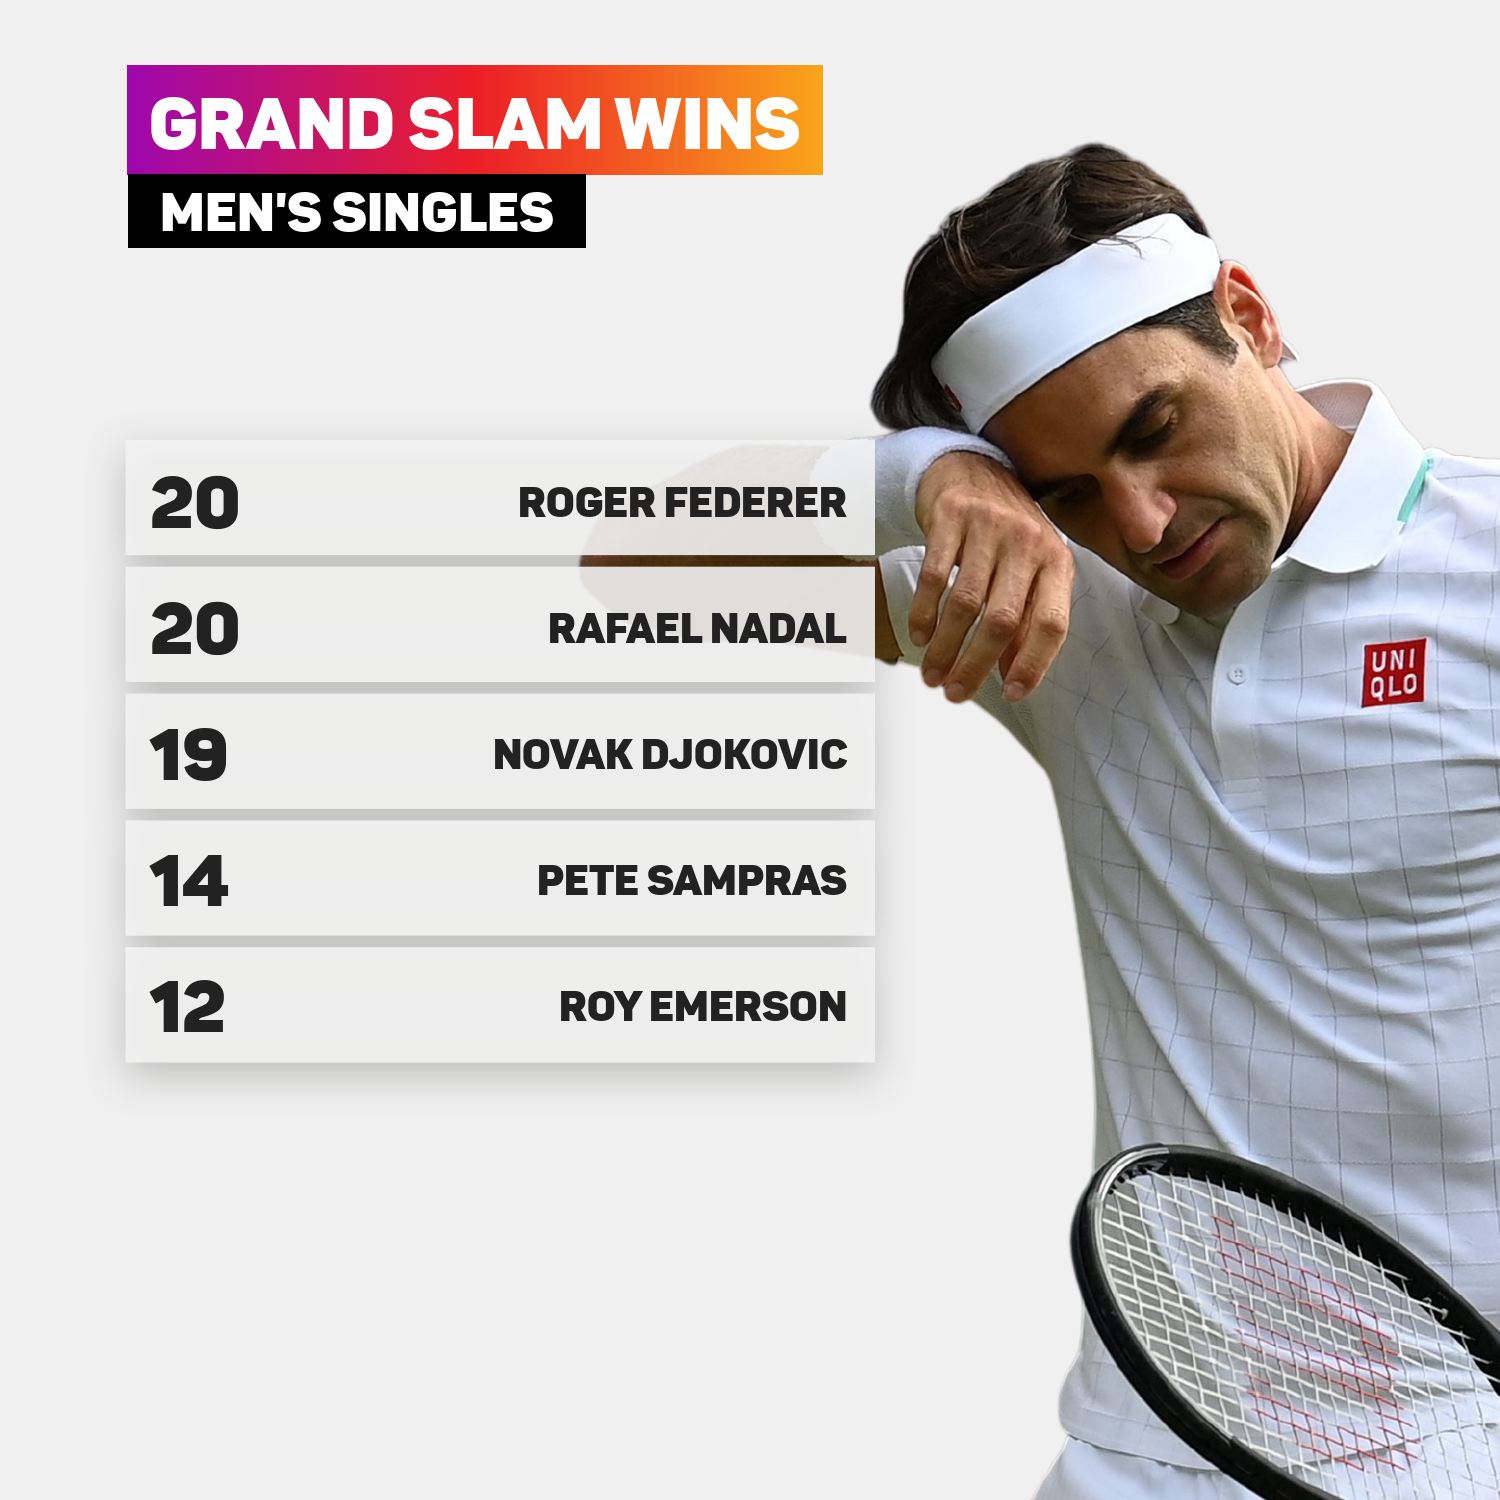 Roger Federer's grand slam titles